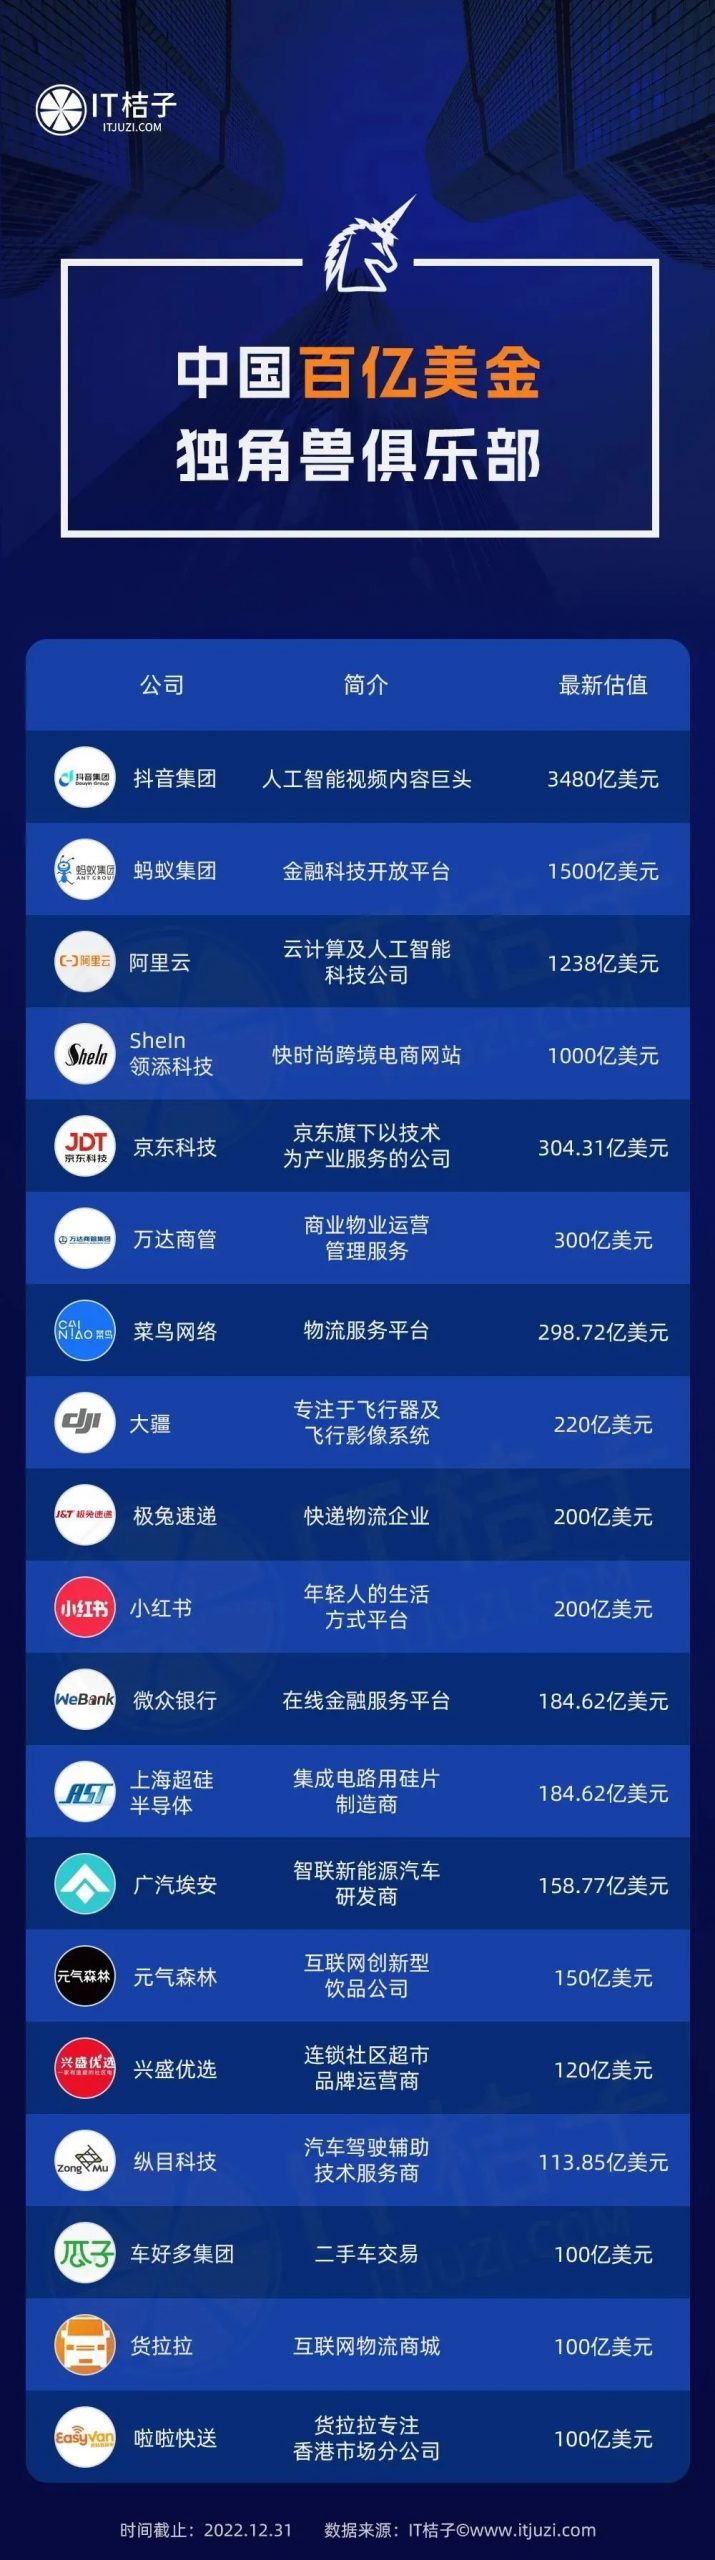 图谱 | 中国百亿美金独角兽名单一览